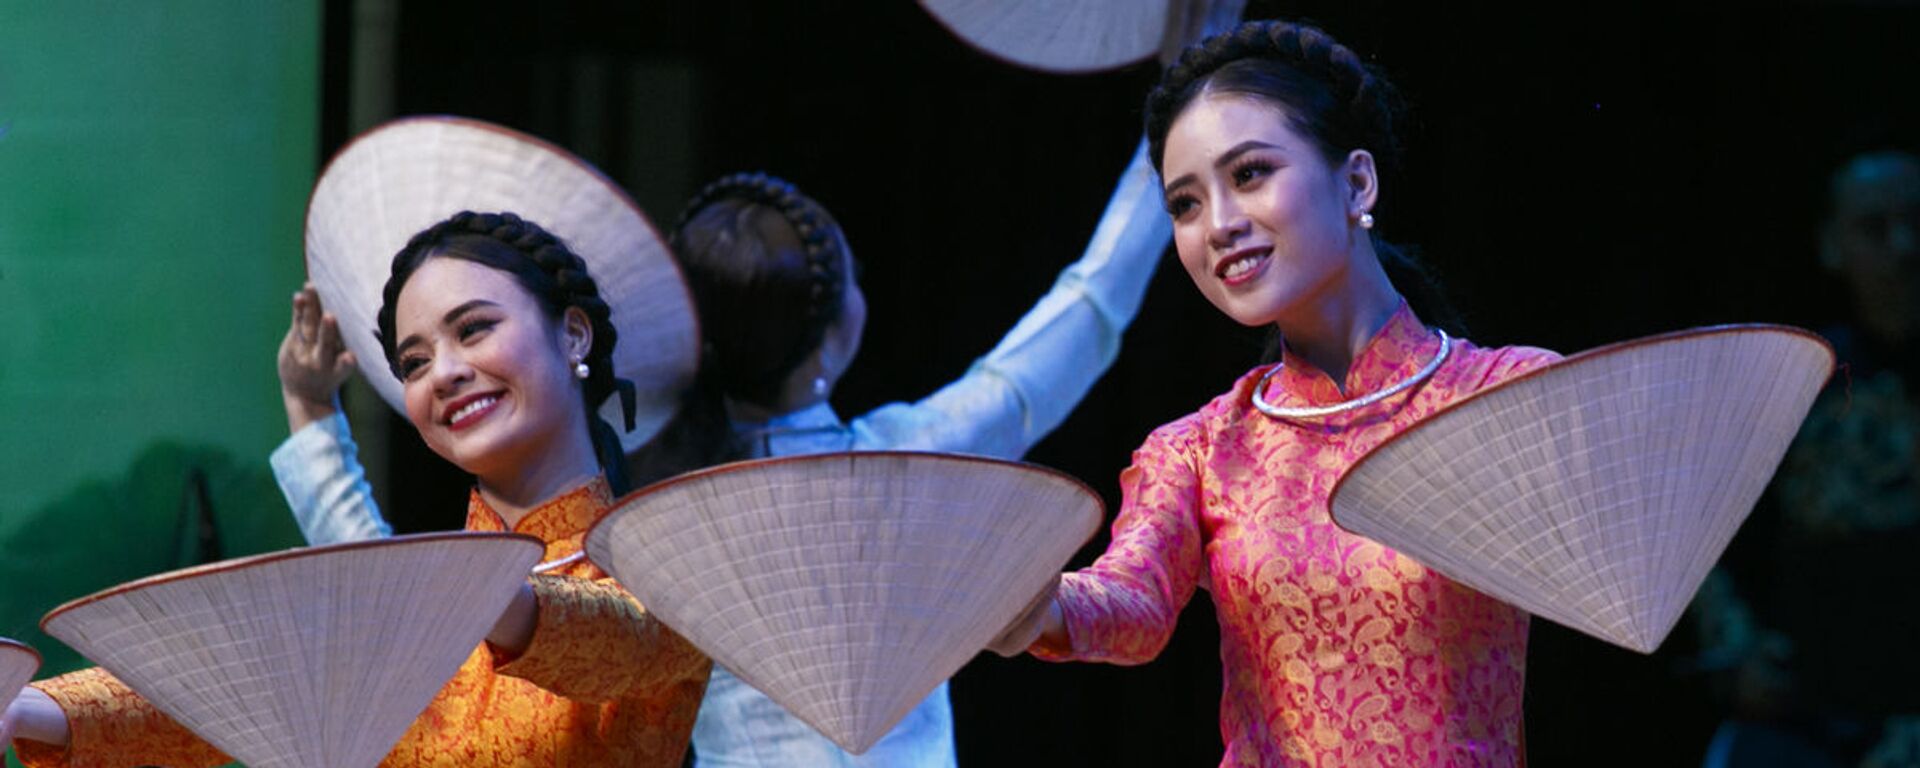 Tiết mục biểu diễn của các nghệ sĩ Việt Nam tại chương trình ca nhạc khai mạc Năm chéo hữu nghị Nga Việt - Sputnik Việt Nam, 1920, 13.06.2022